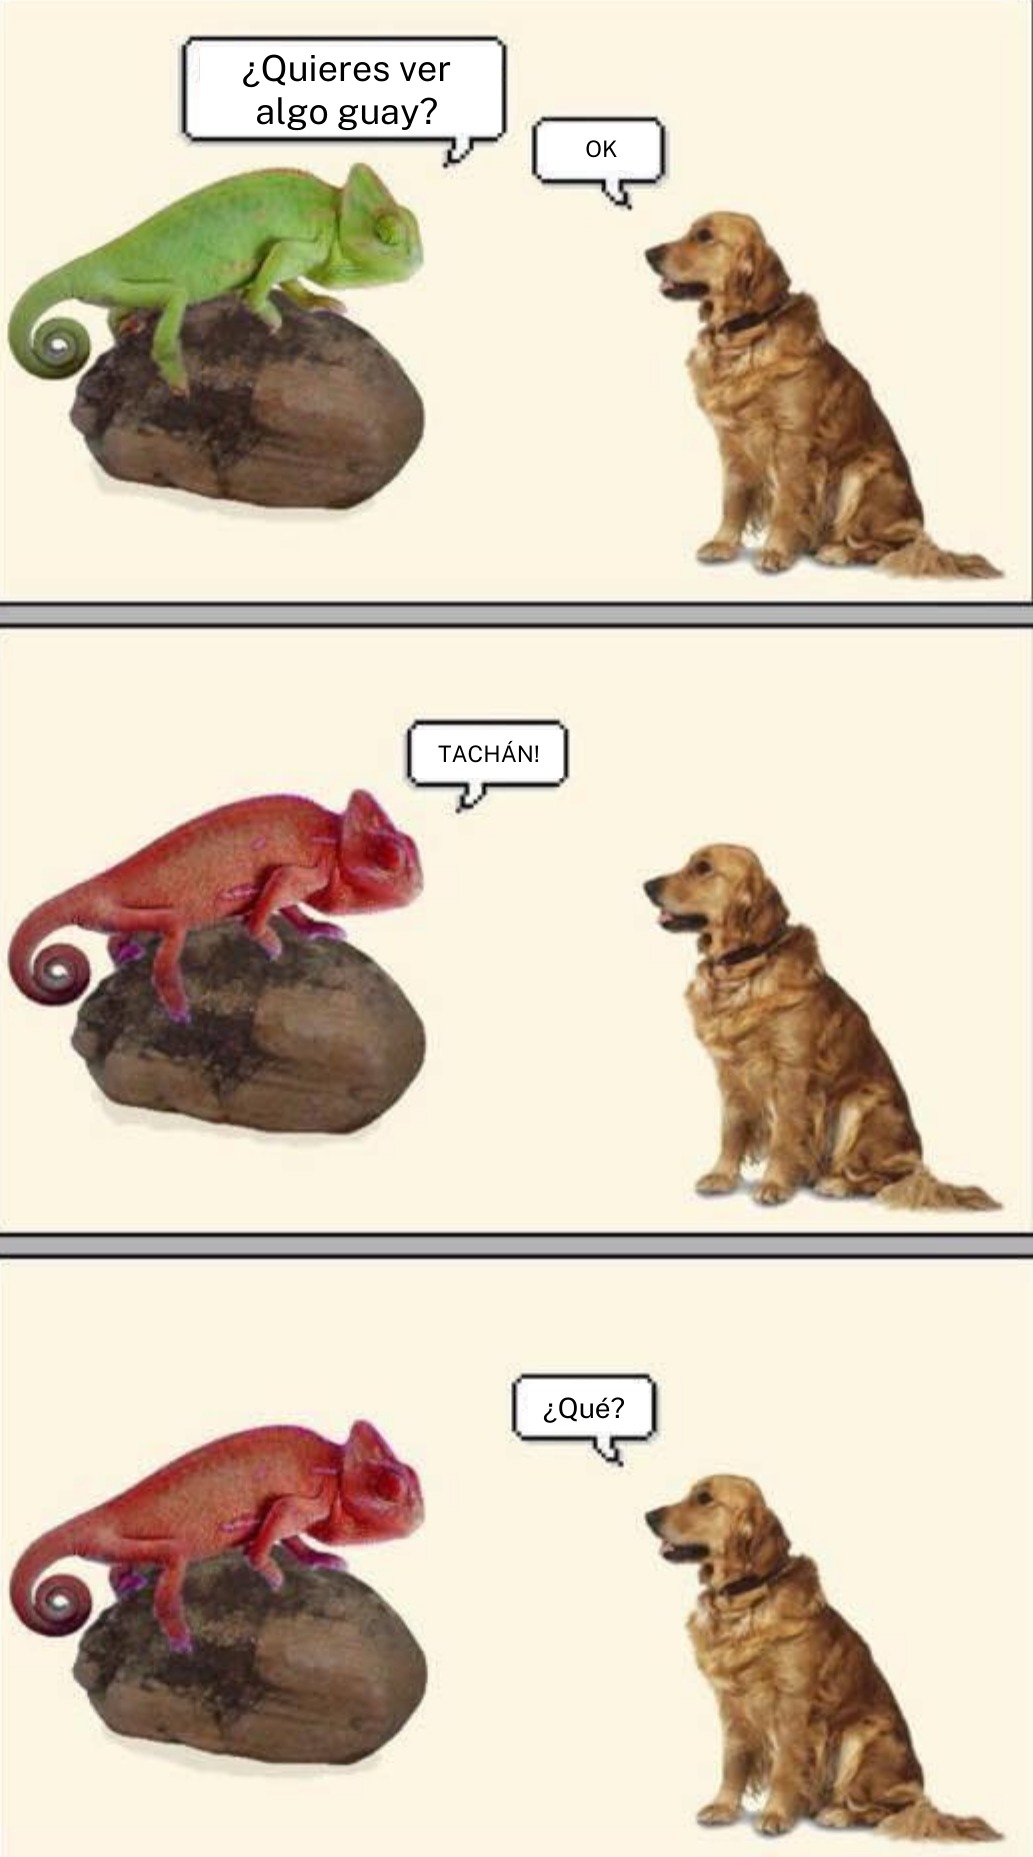 buena conversación entre un camaleón y un perro - meme